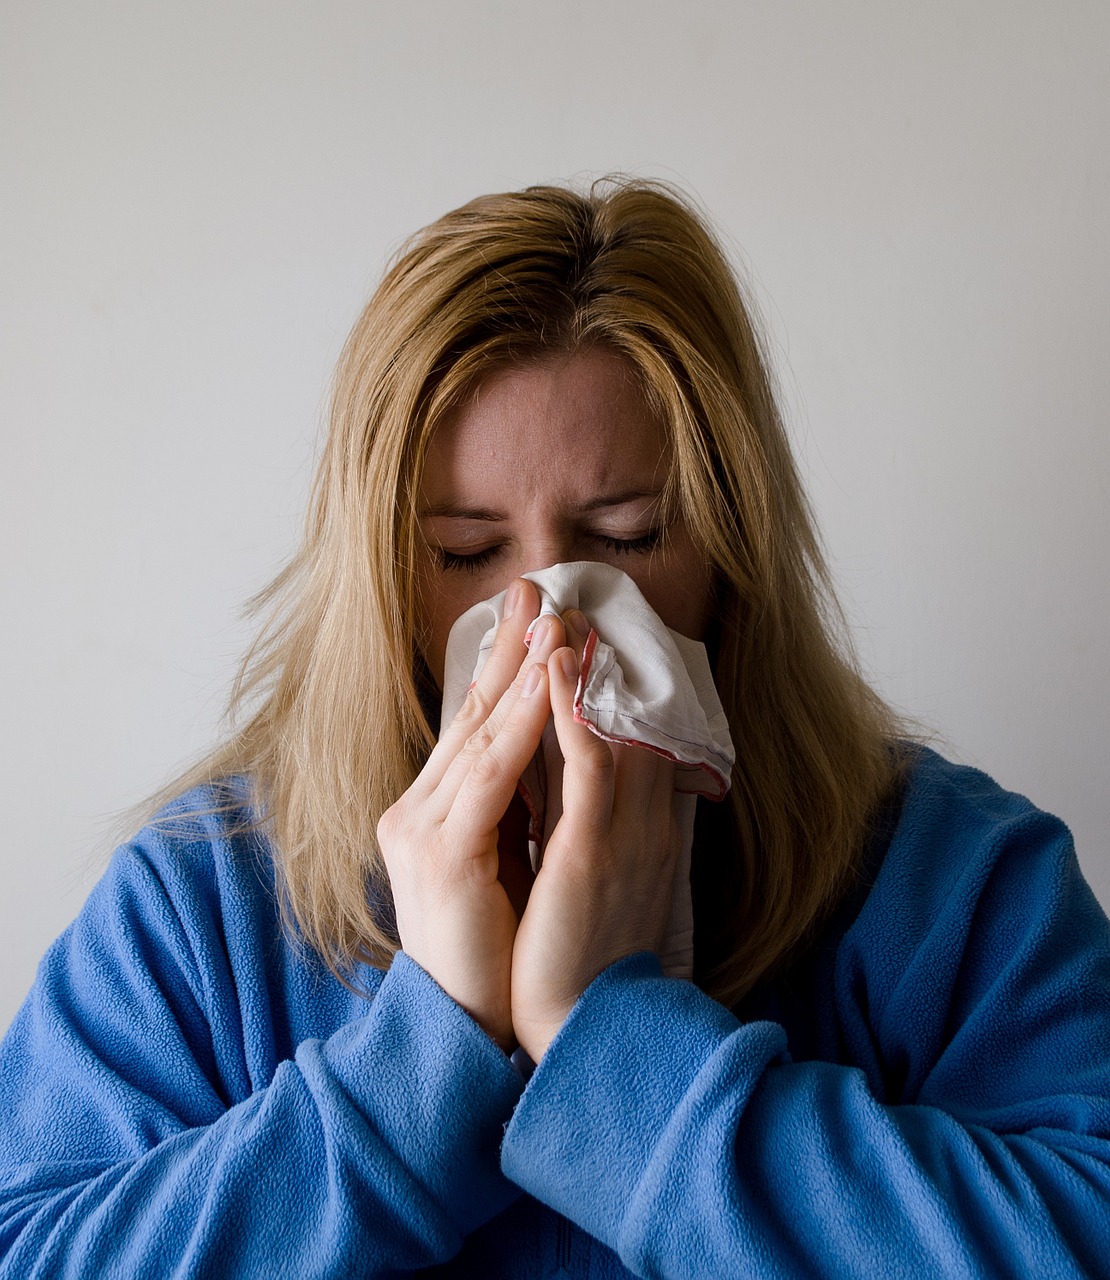 Ogranicz ilość alergenów w domu.